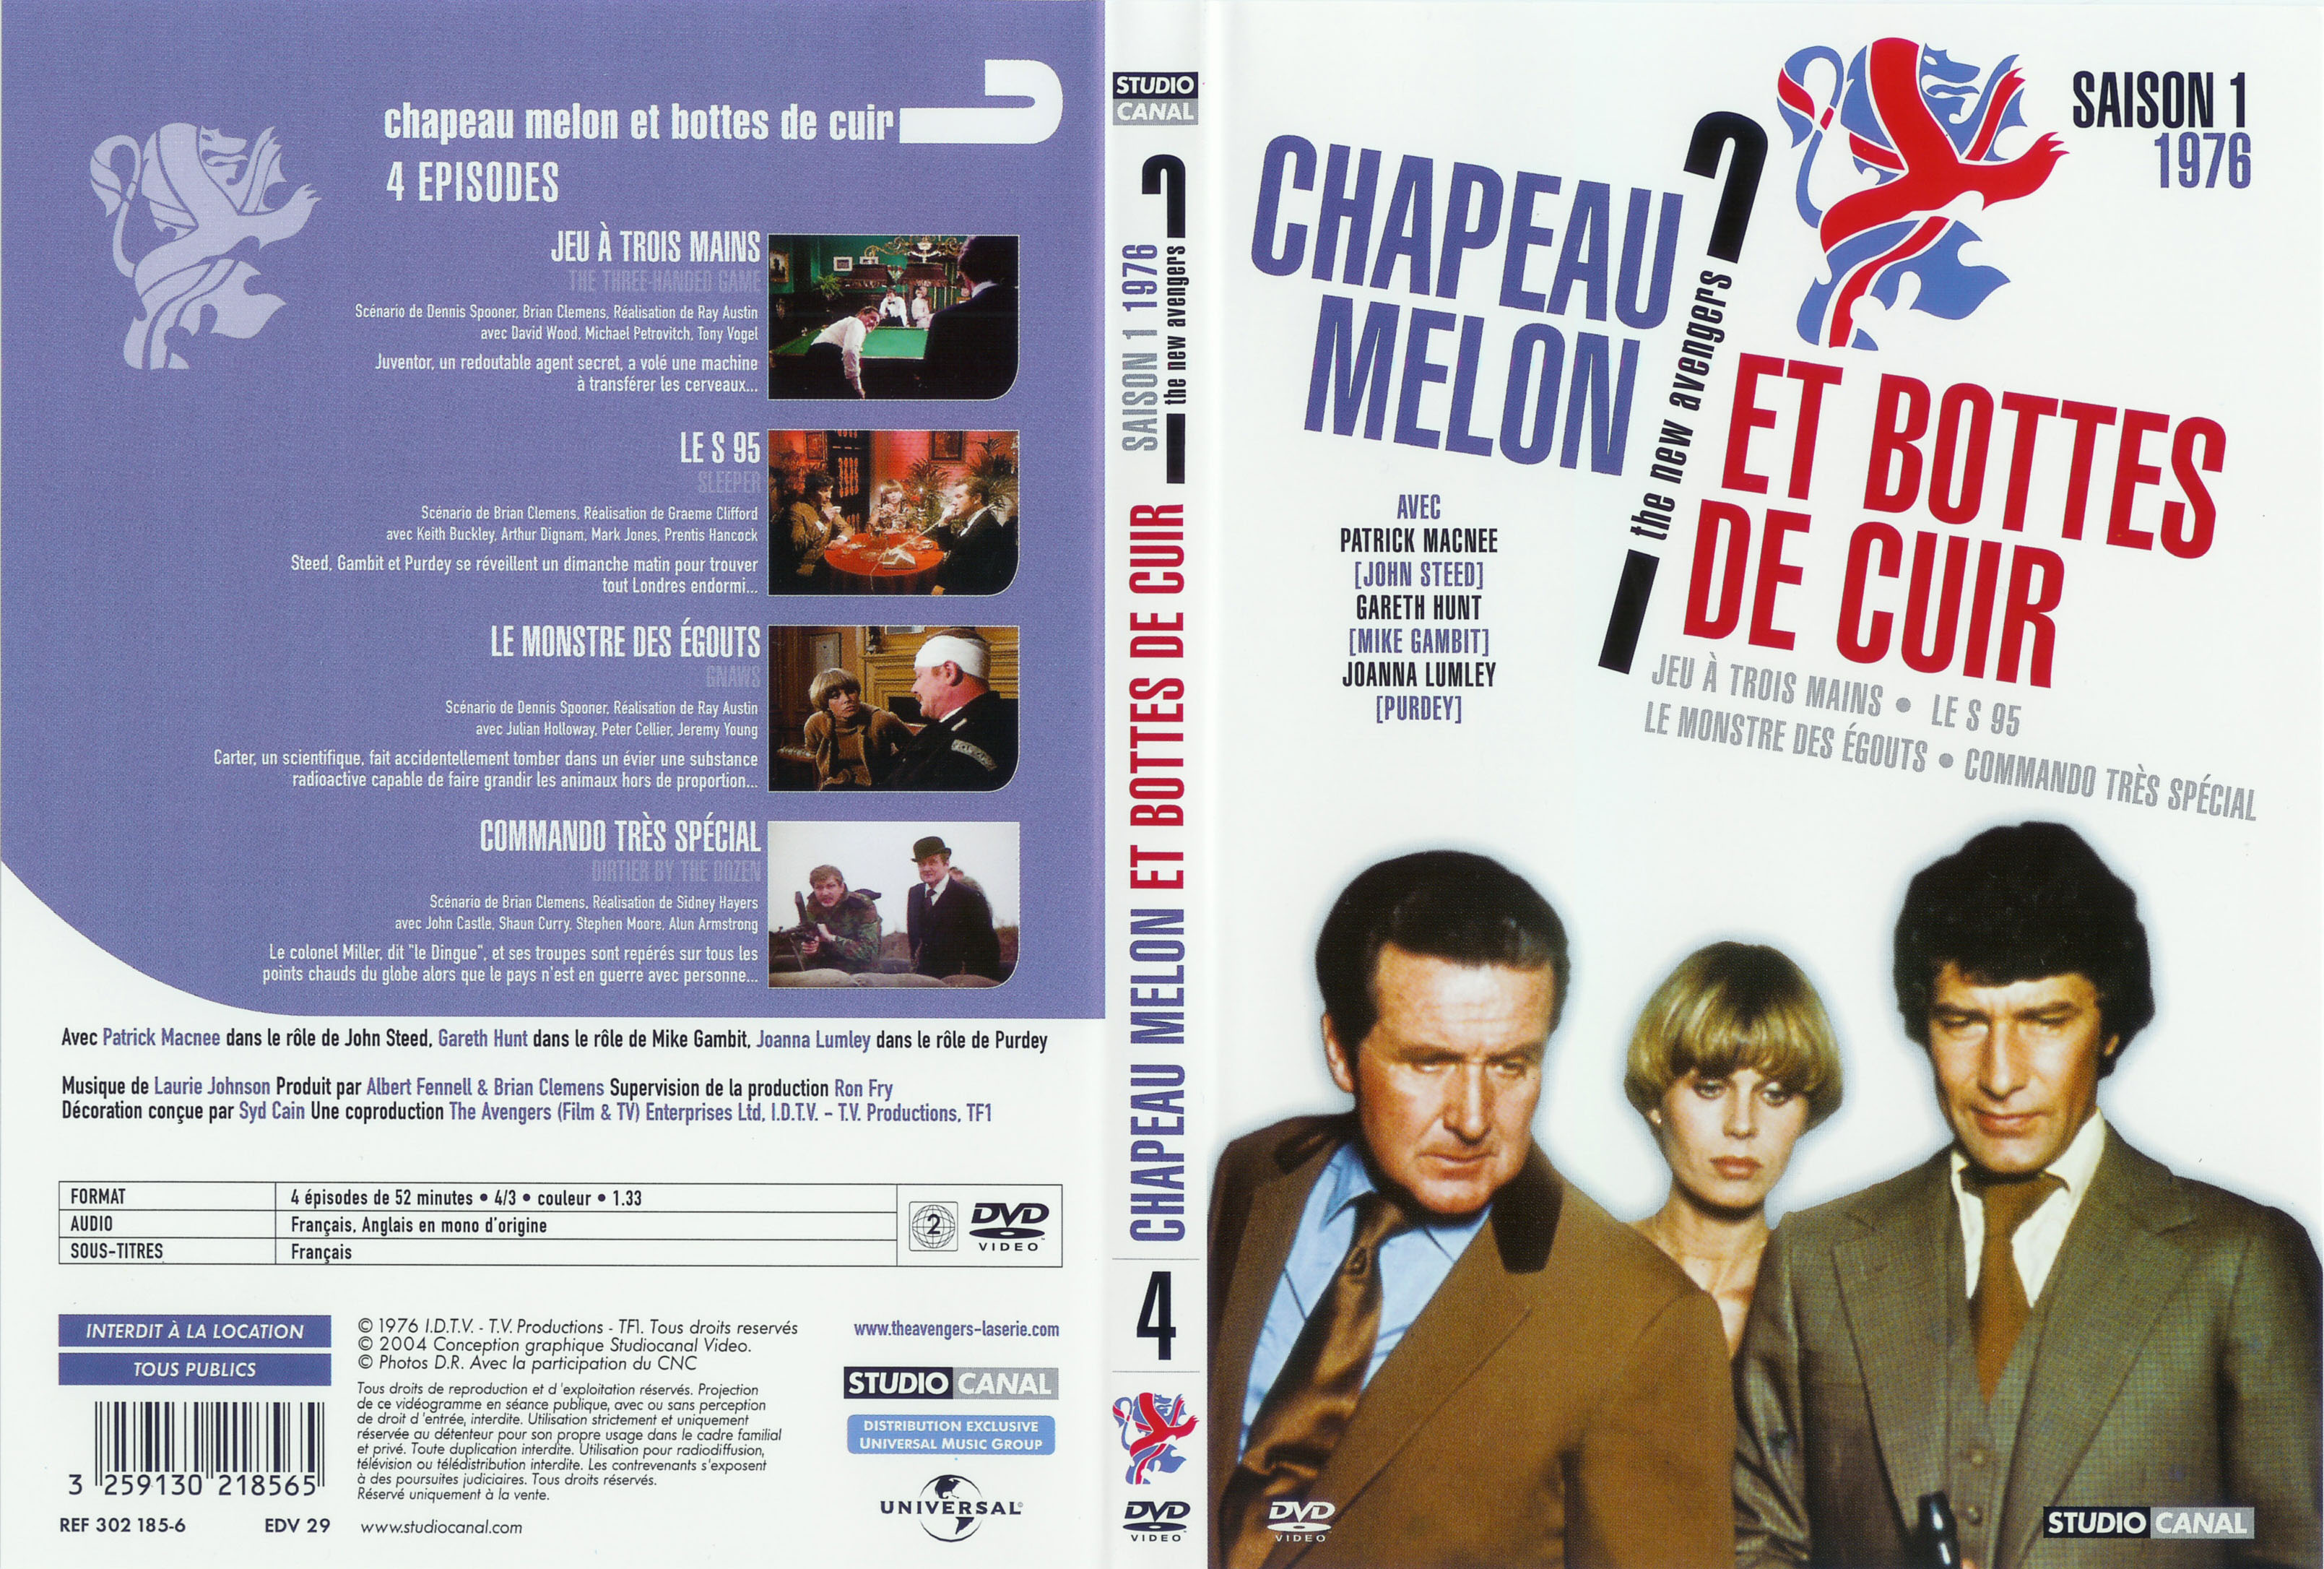 Jaquette DVD Chapeau melon et bottes de cuir 1976 vol 4